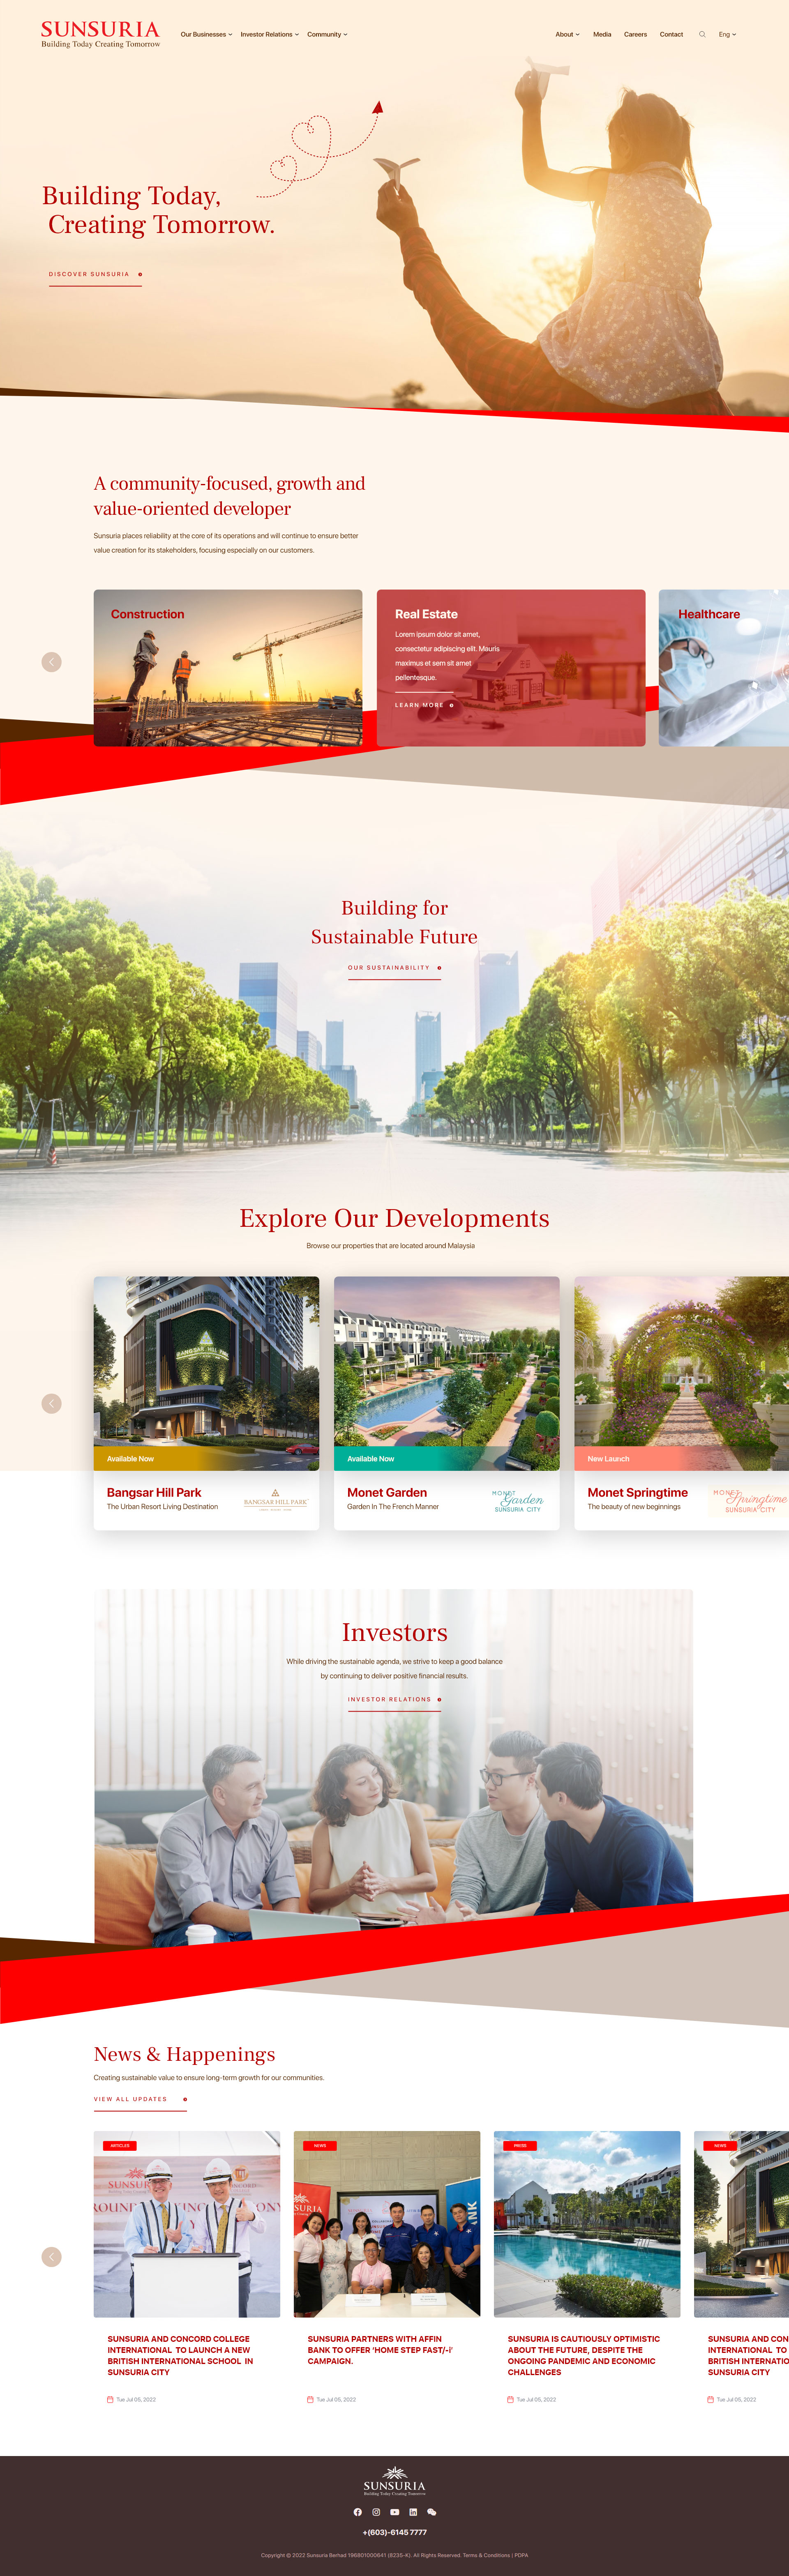 Property Developer Website Design